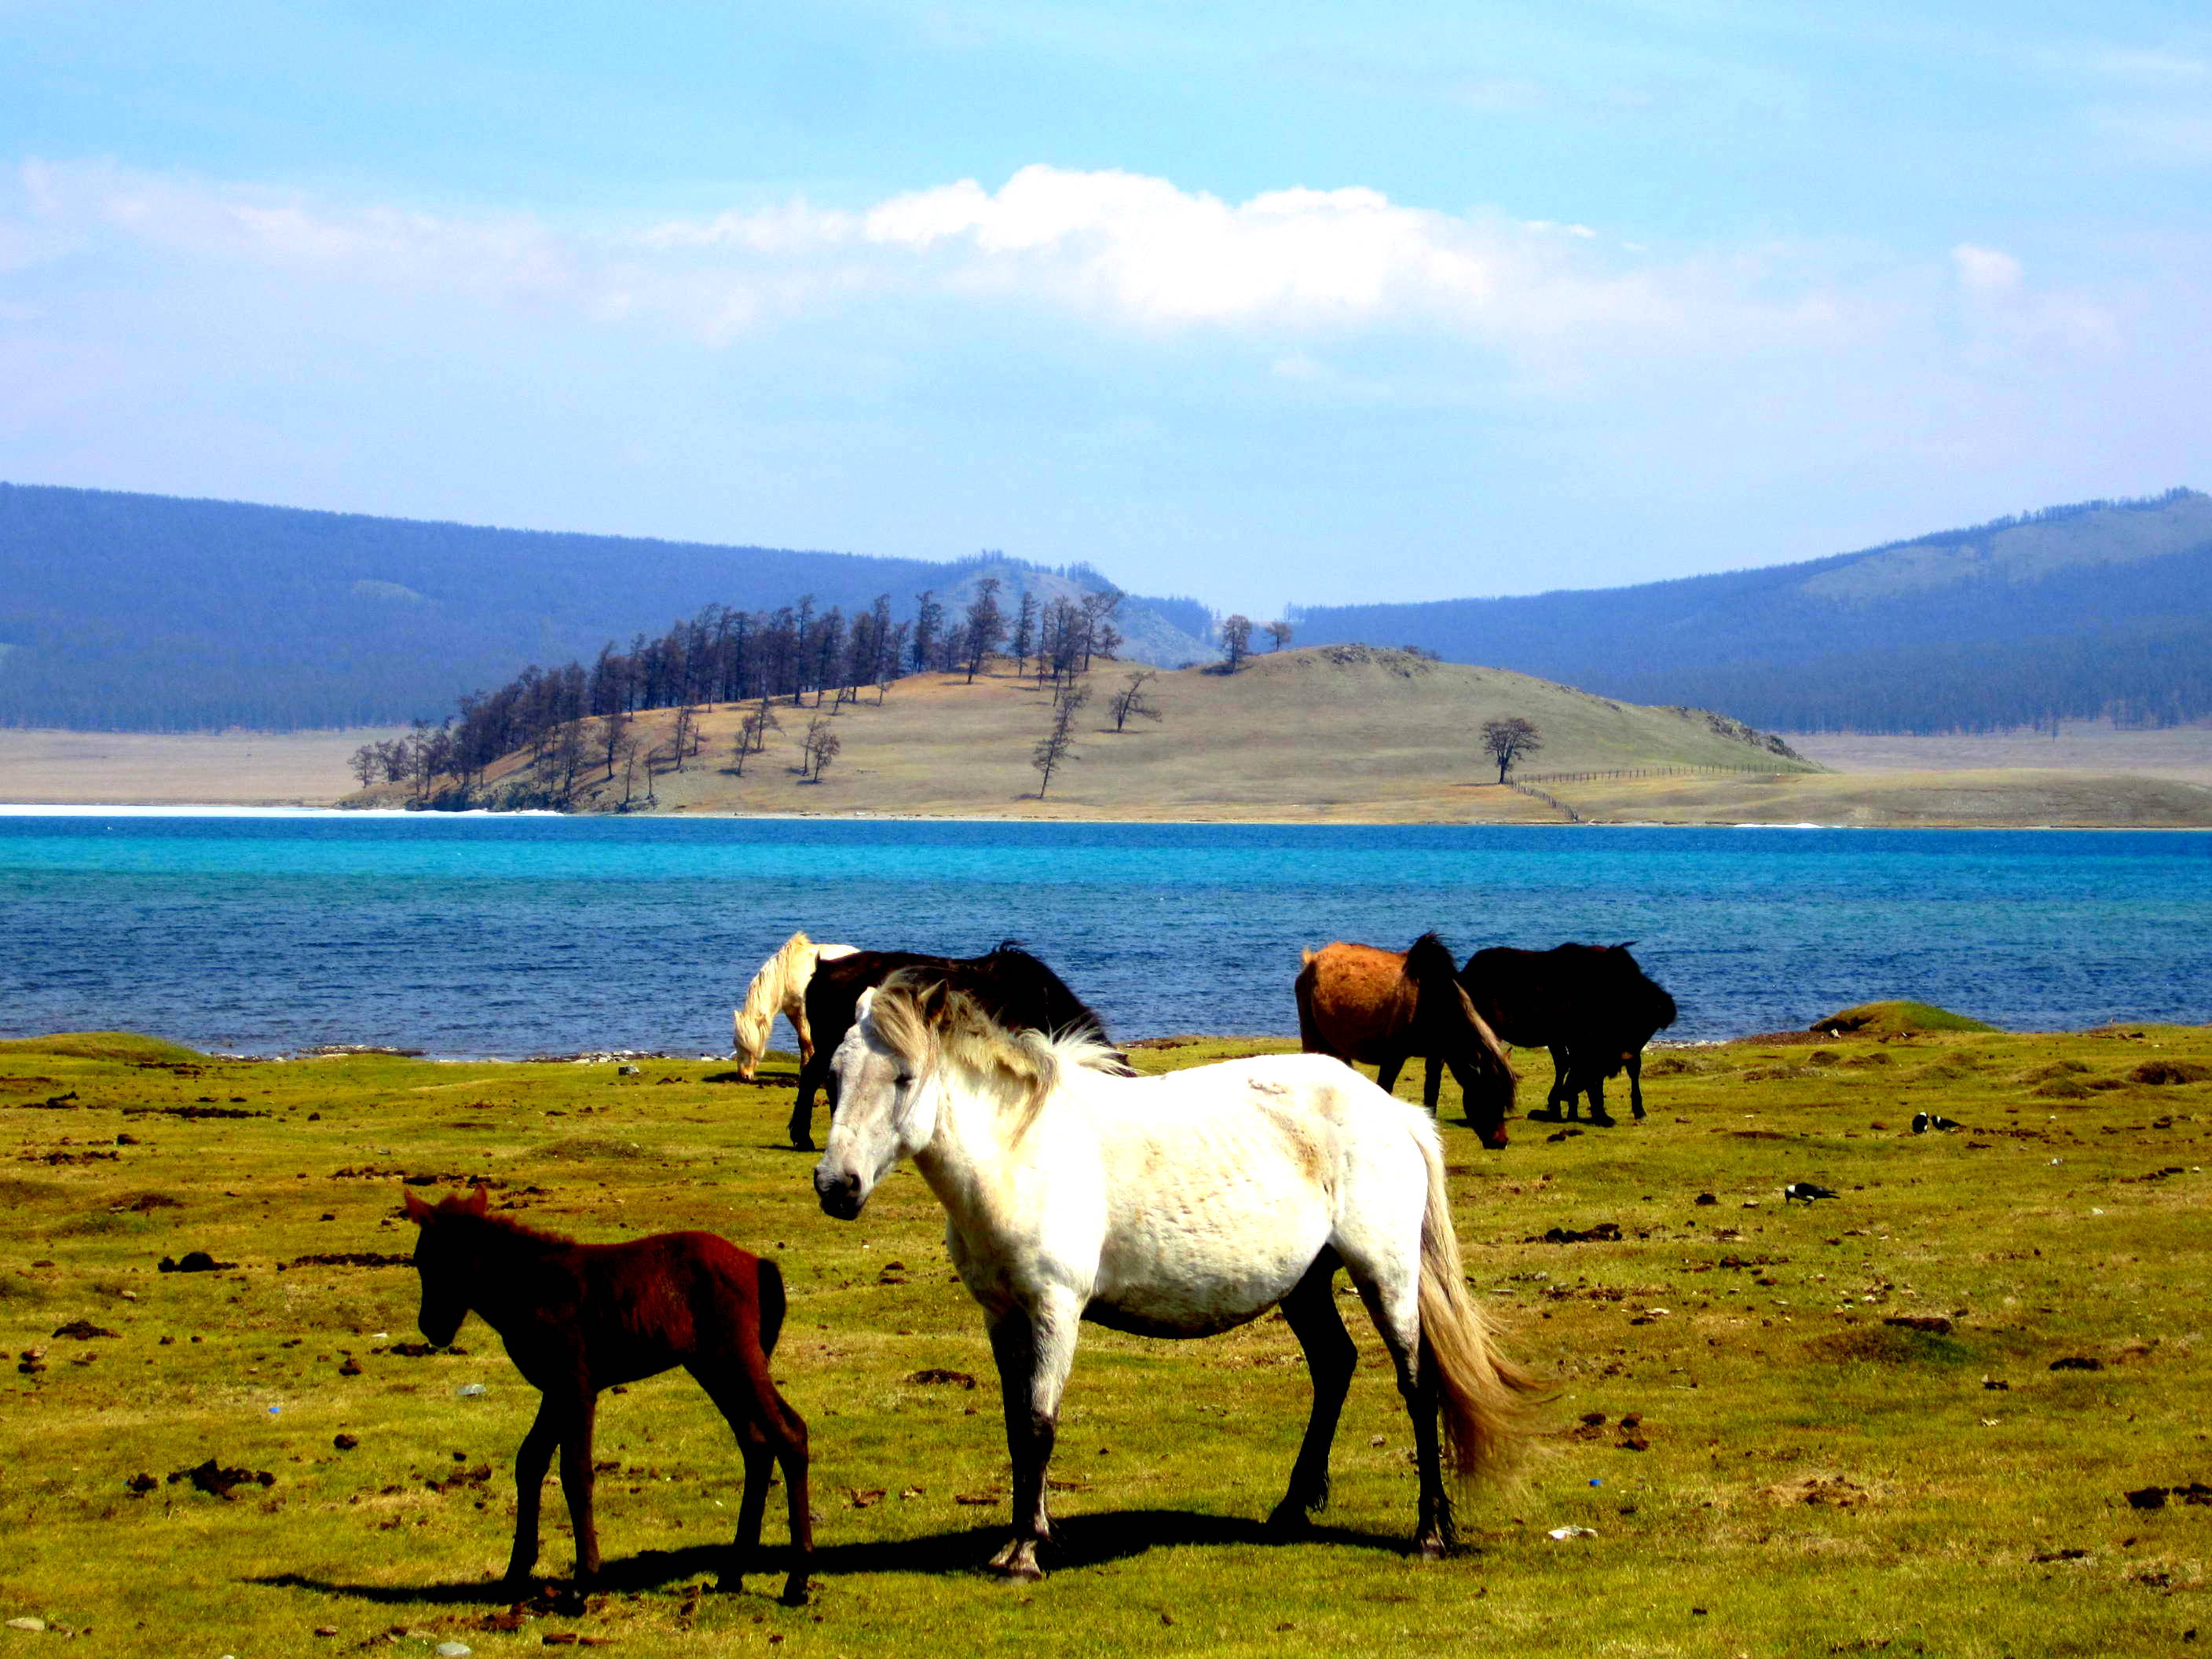 Horses wandering freely along Lake Khövsgöl, Mongolia